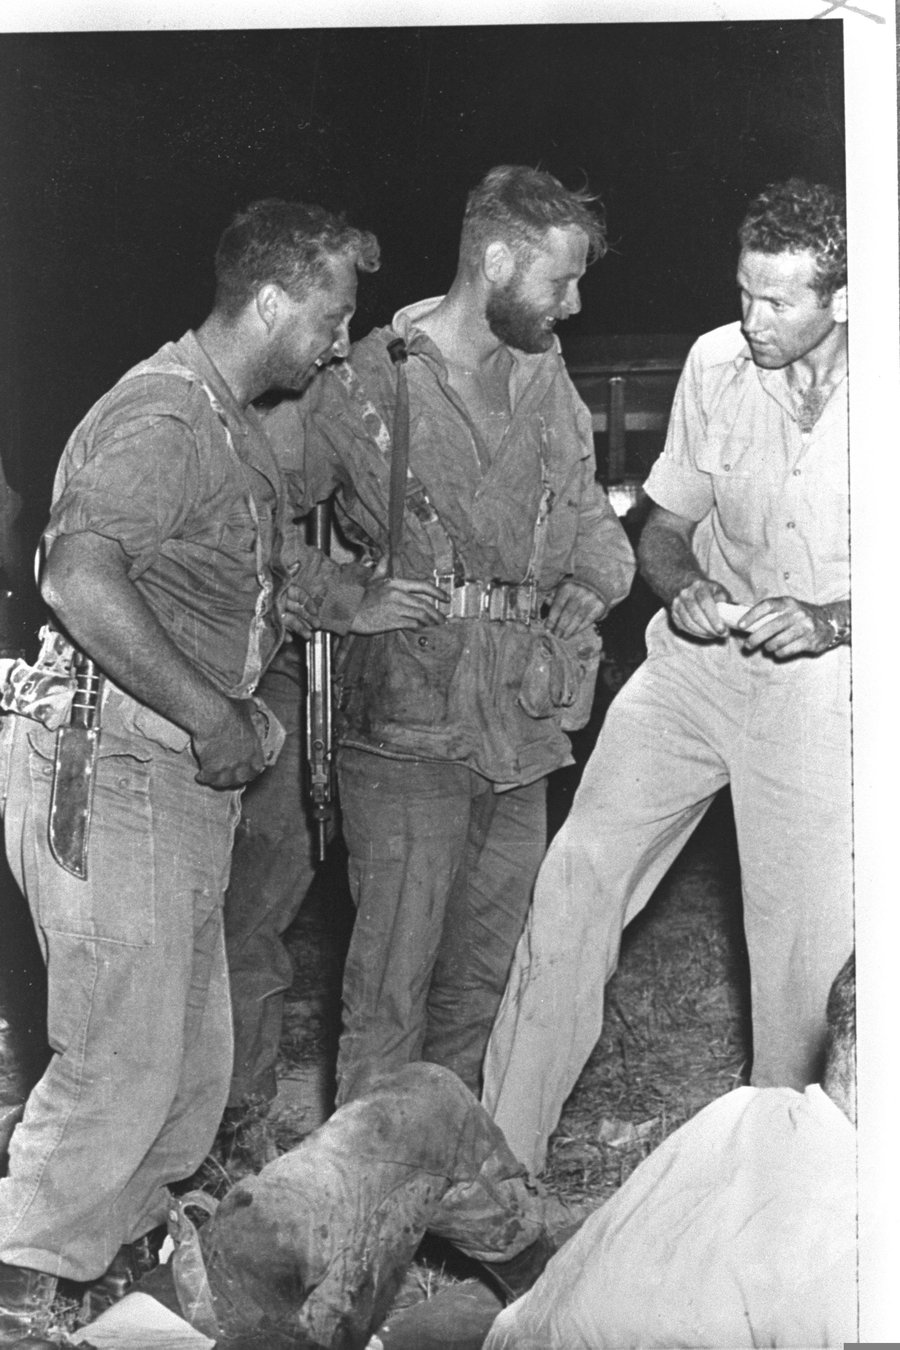 משמאל לימין: אריאל שרון, אהרן דוידי ויצחק בן מנחם (גוליבר), במשטרת חן יונס בזמן מבצע אלקיים